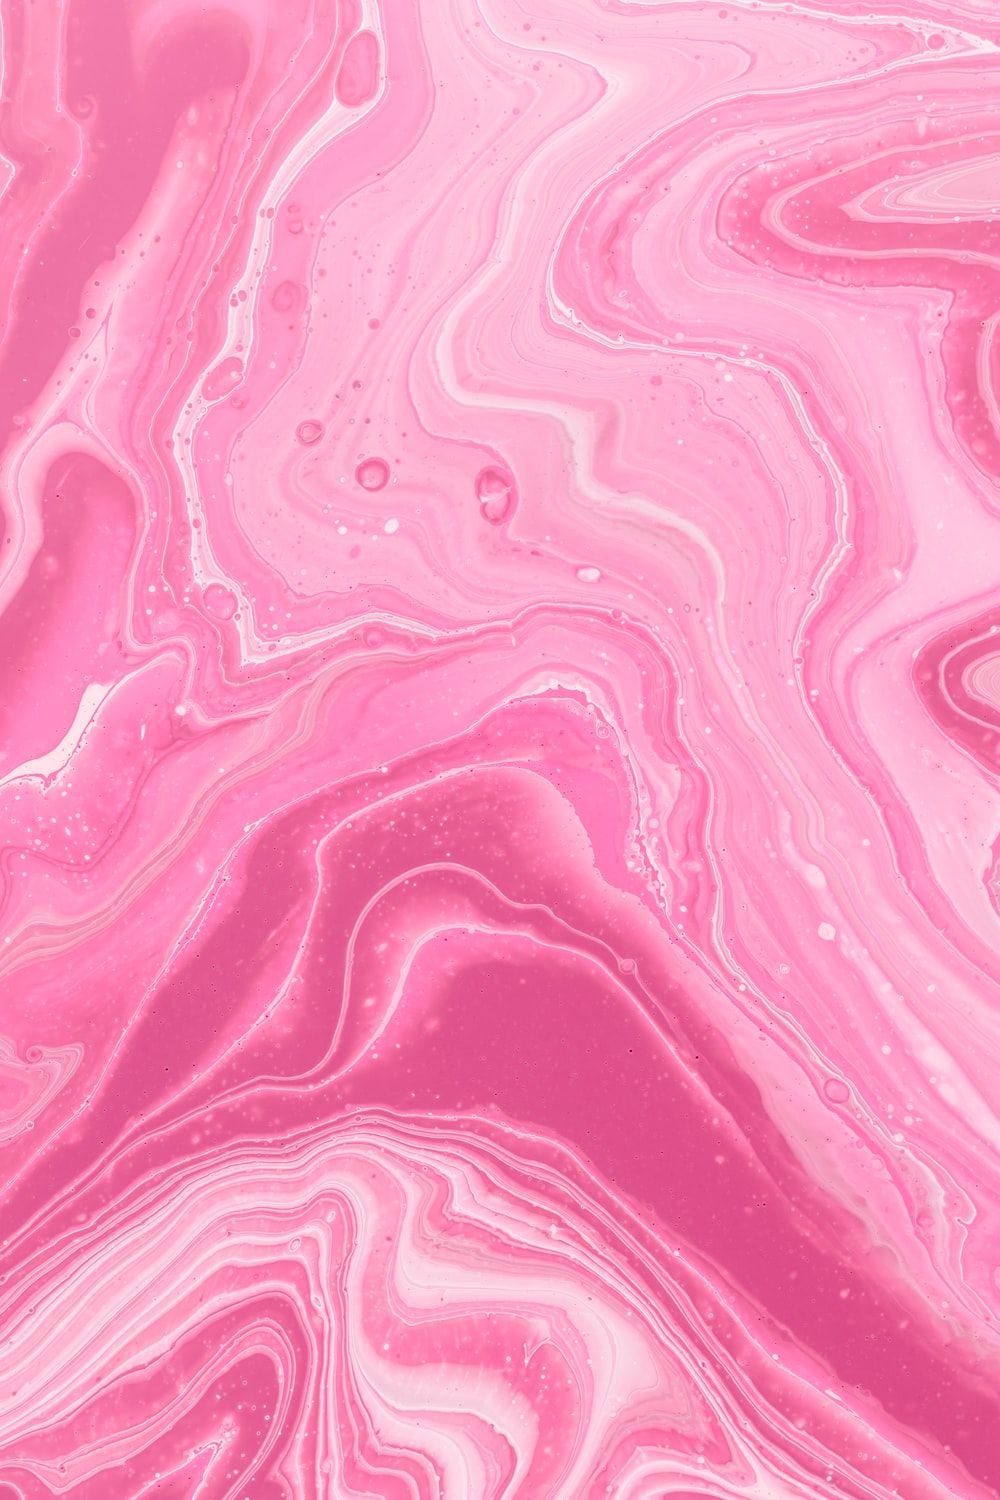 Pink Wallpaper: Free HD Download [HQ]